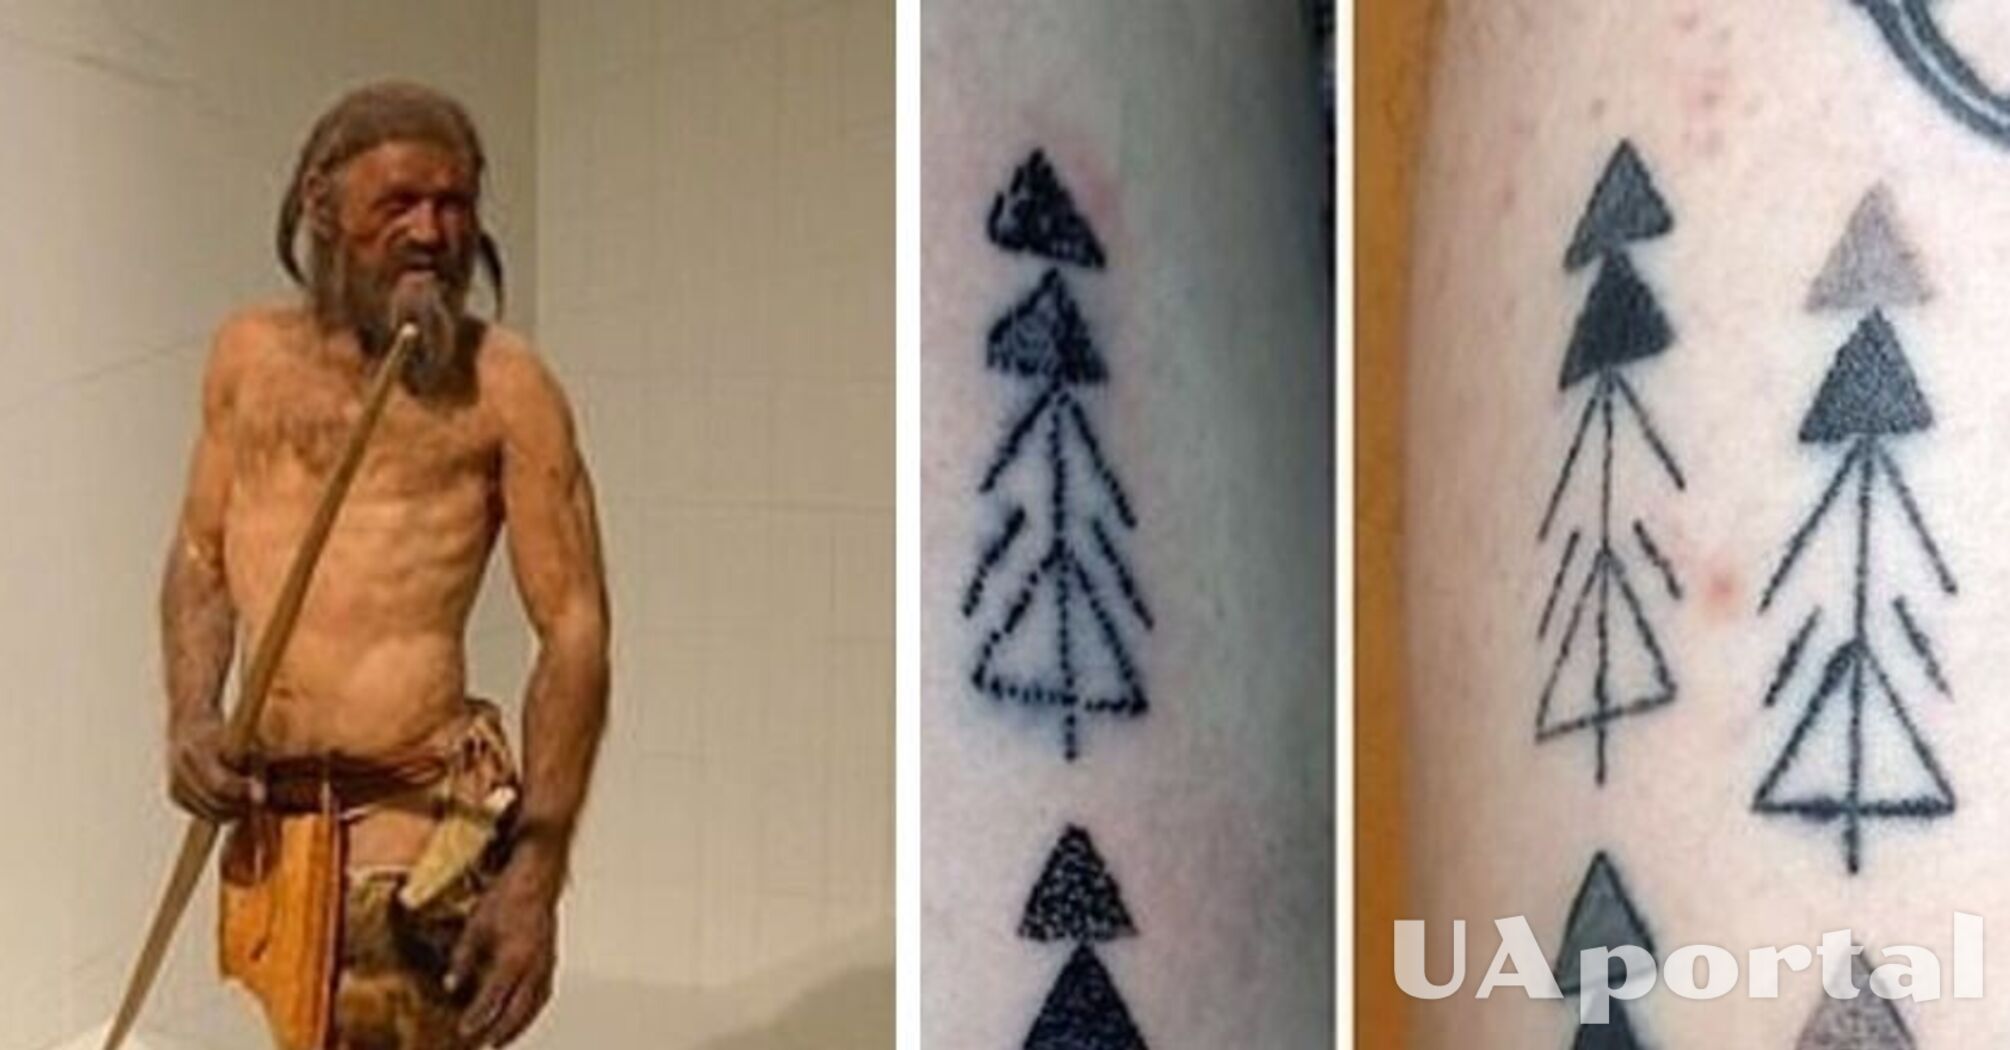 Tajemnica tatuaży 5300-letniego człowieka lodu Etzi została ujawniona (zdjęcie)